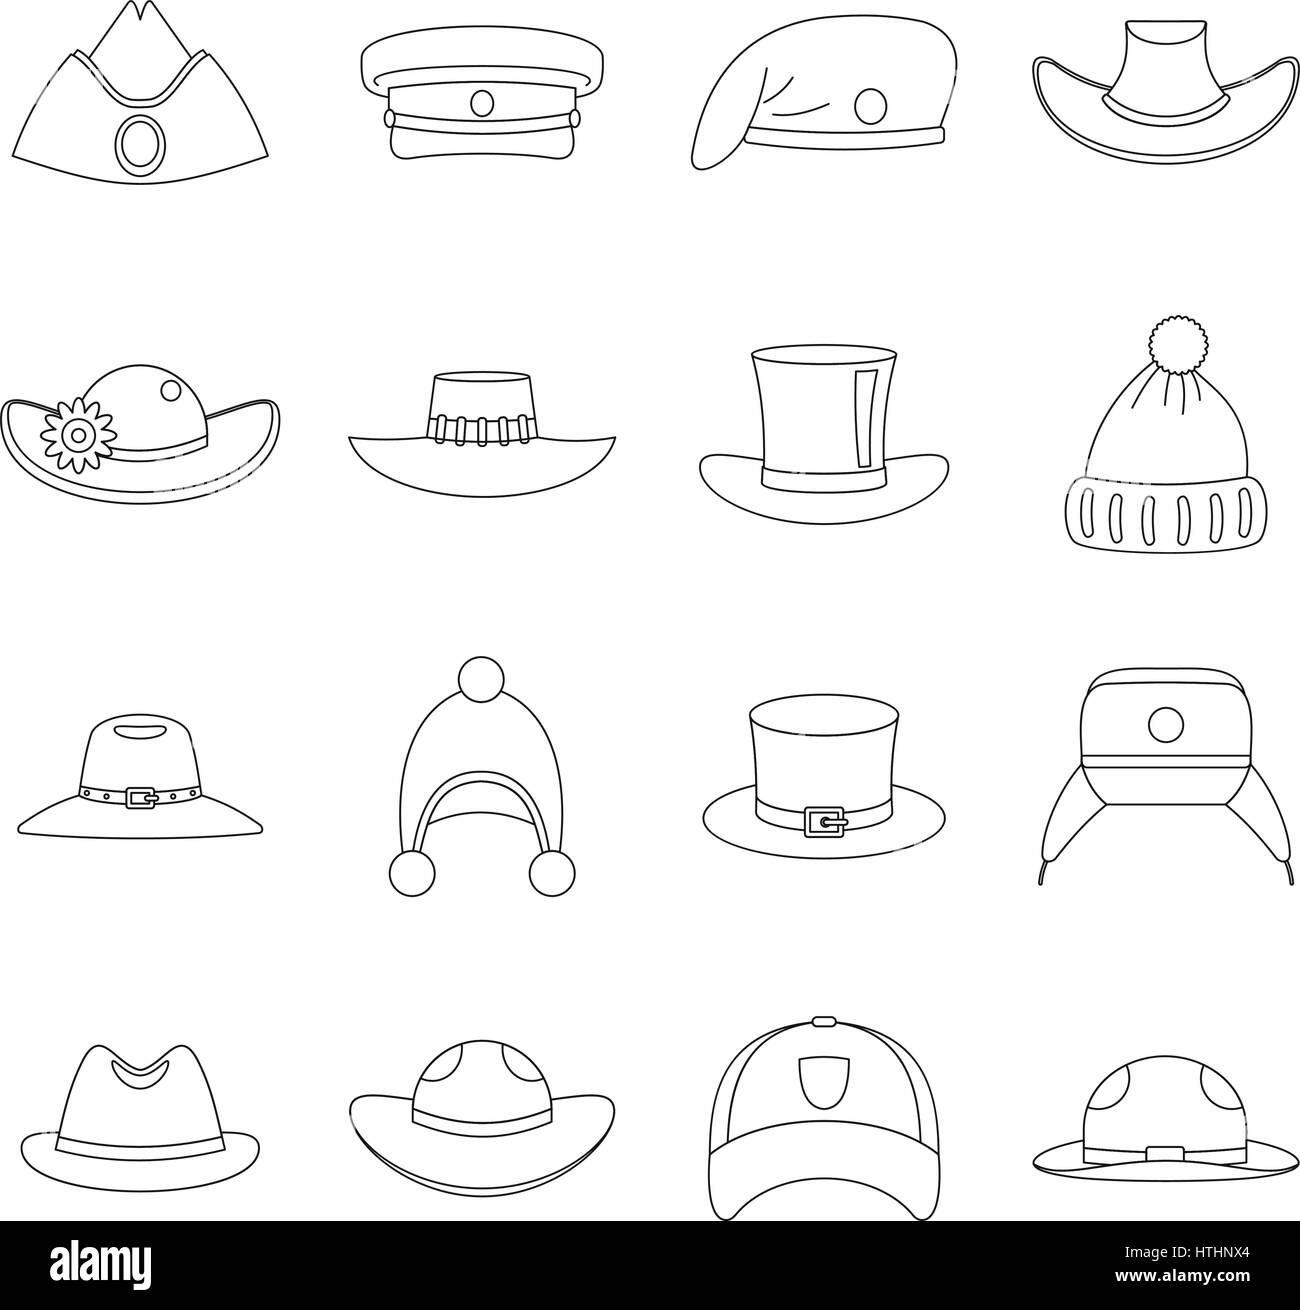 Chapeau coiffe icons set. Contours illustration de 16 icônes vectorielles hat coiffure pour le web Illustration de Vecteur